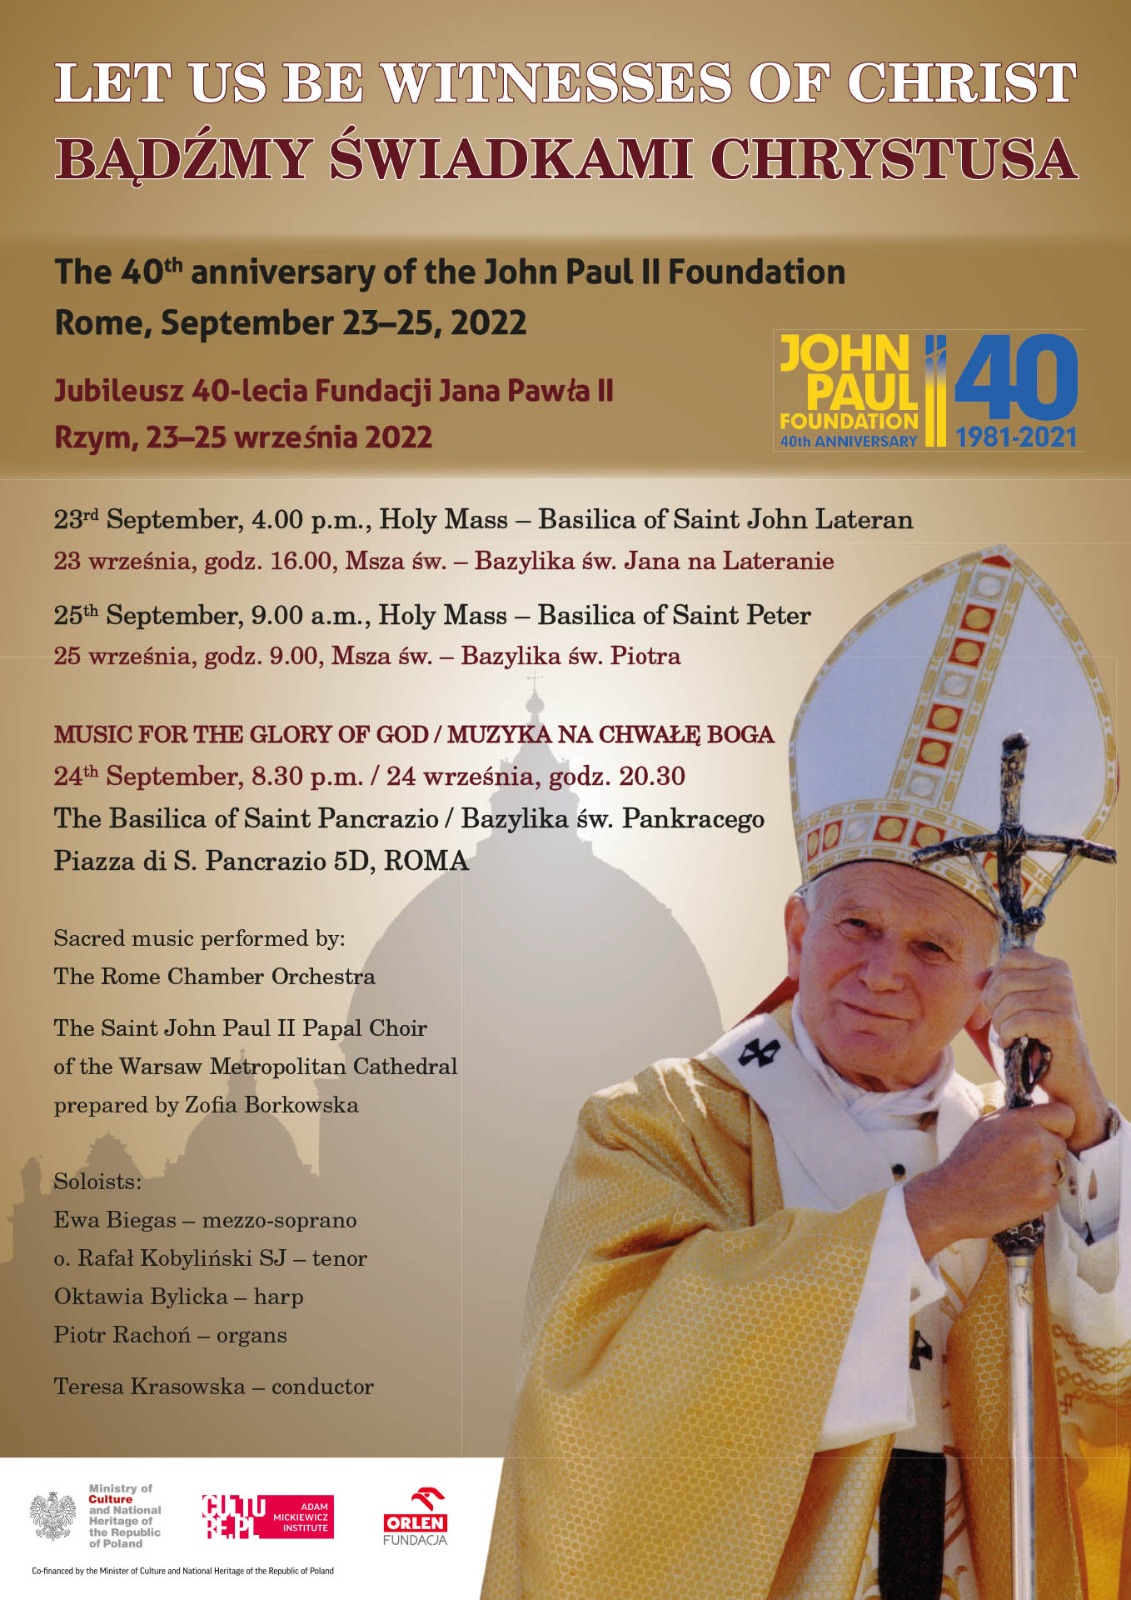 Jubileusz 40-lecia Fundacji Jana Pawła II. Sympozjum